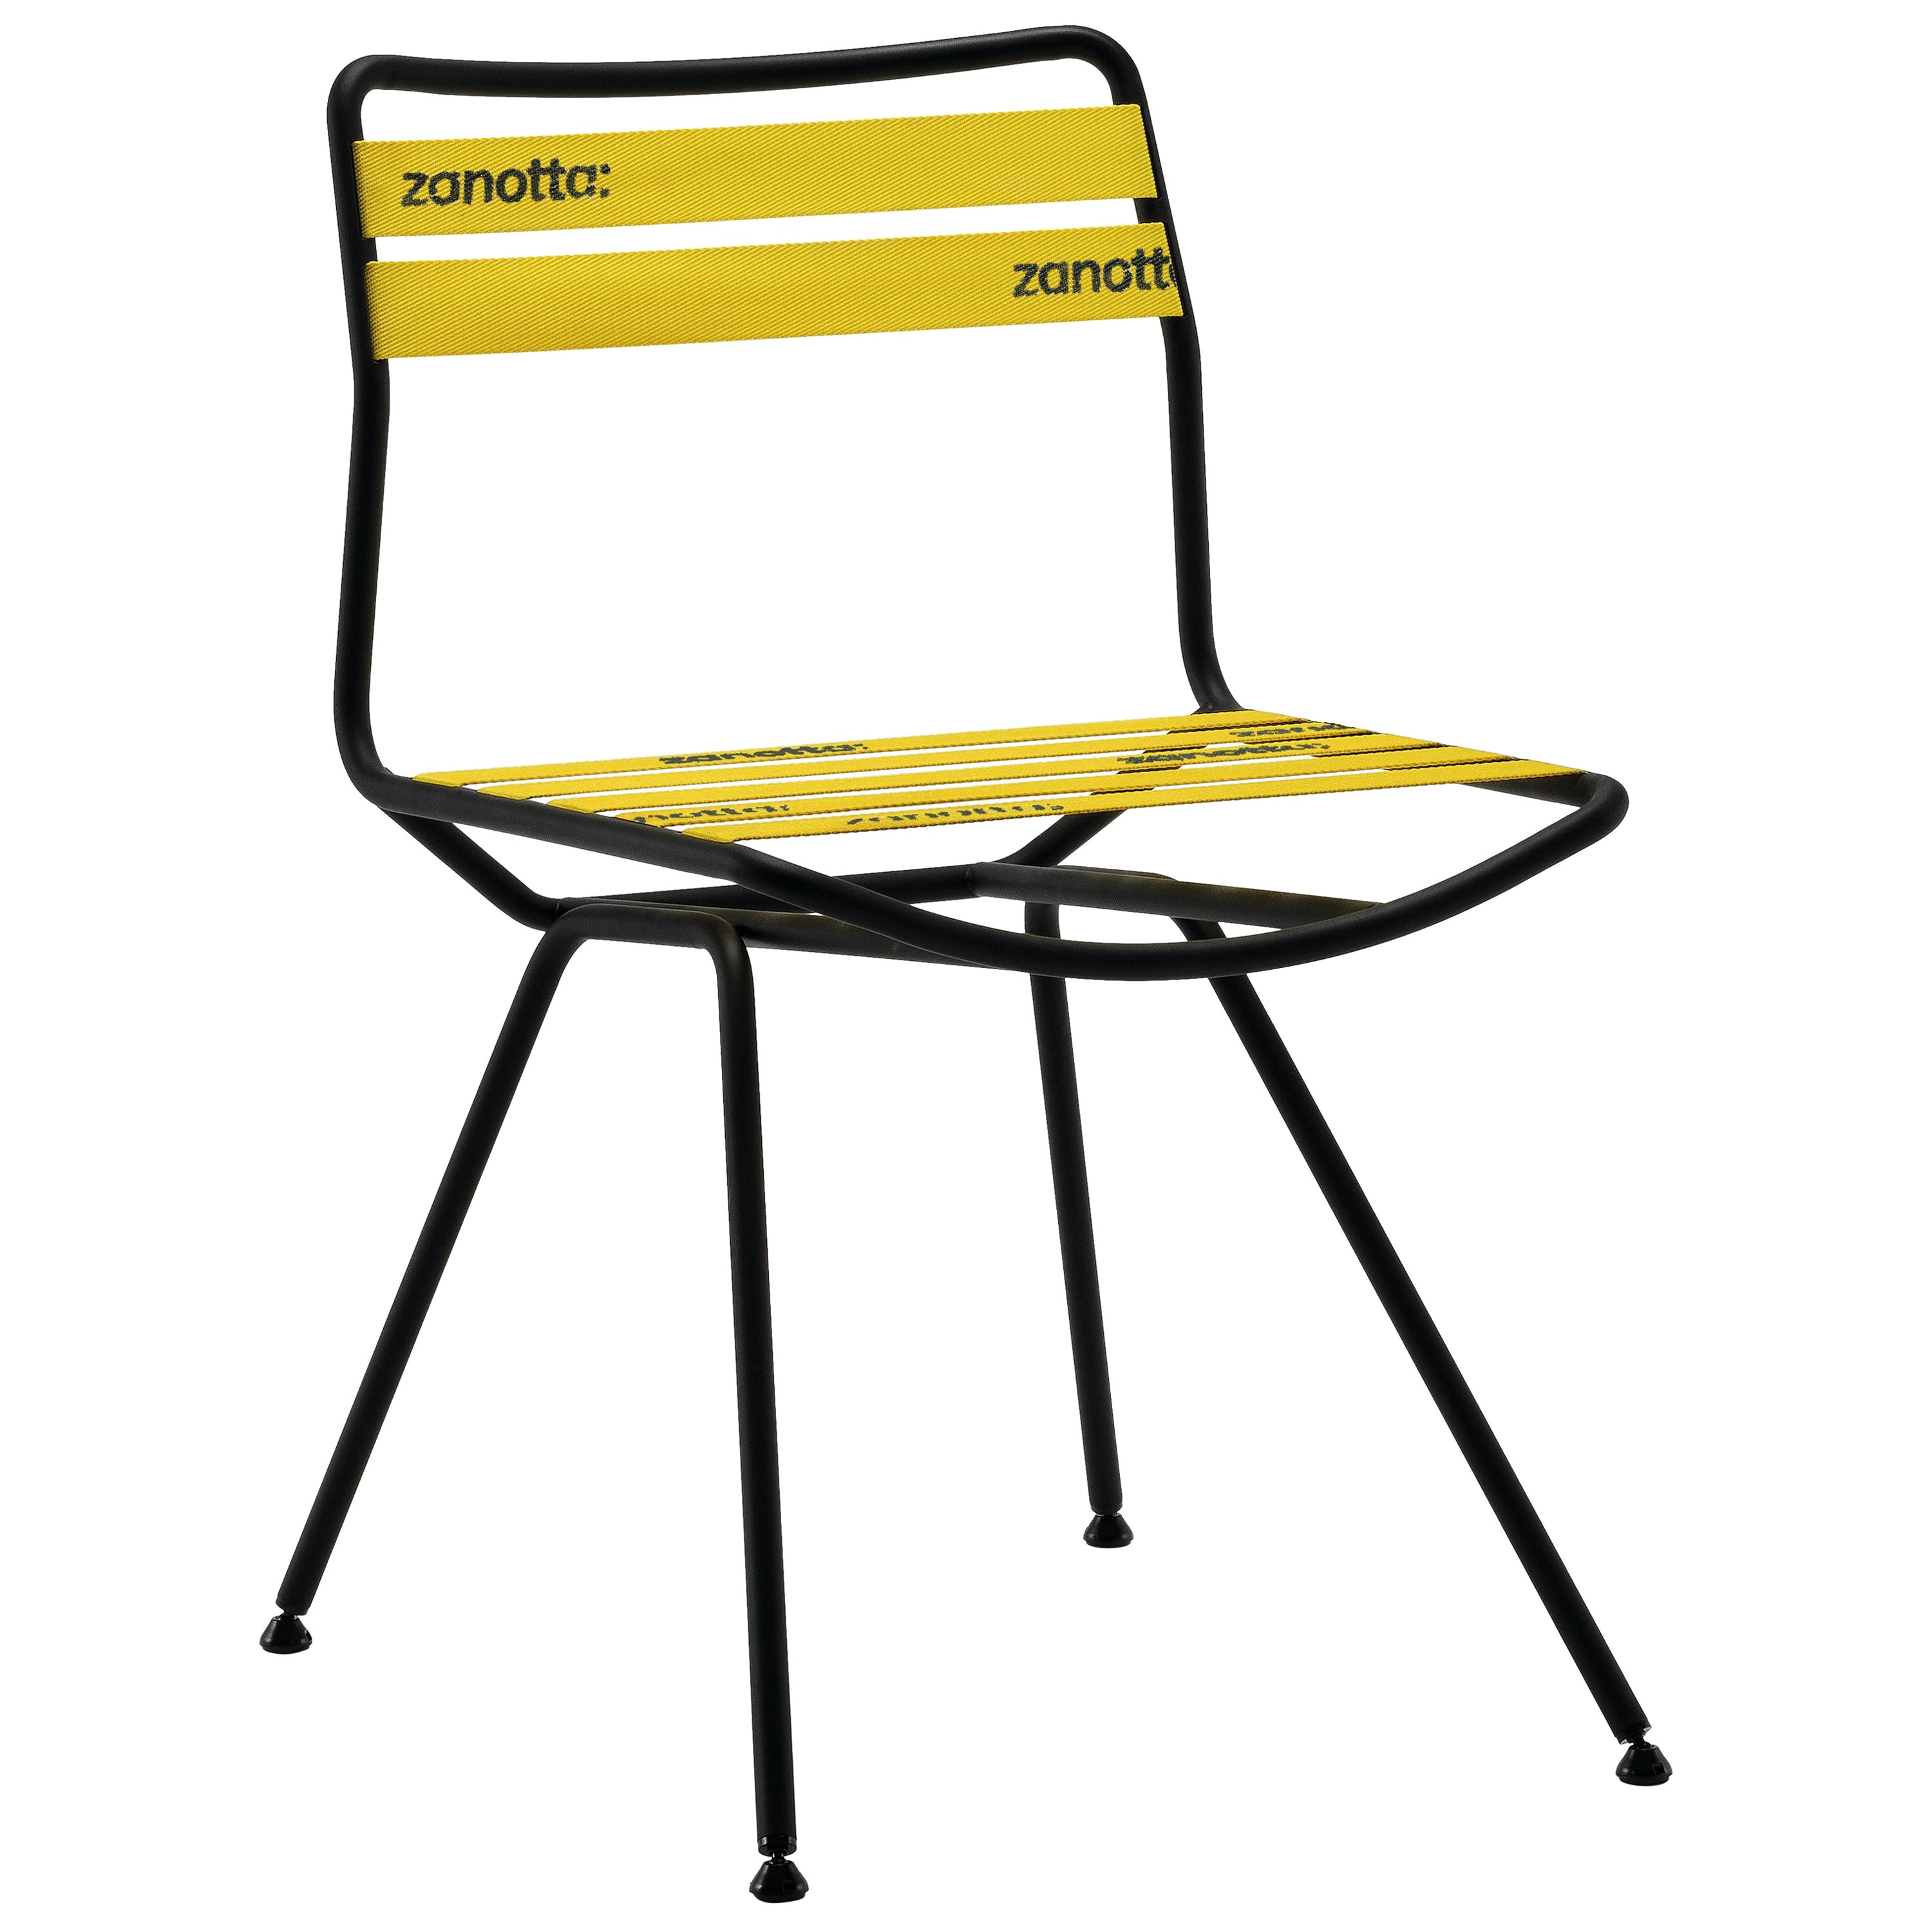 Chaise Zanotta Dan avec assise et dossier en élastique jaune et cadre en acier noir mat